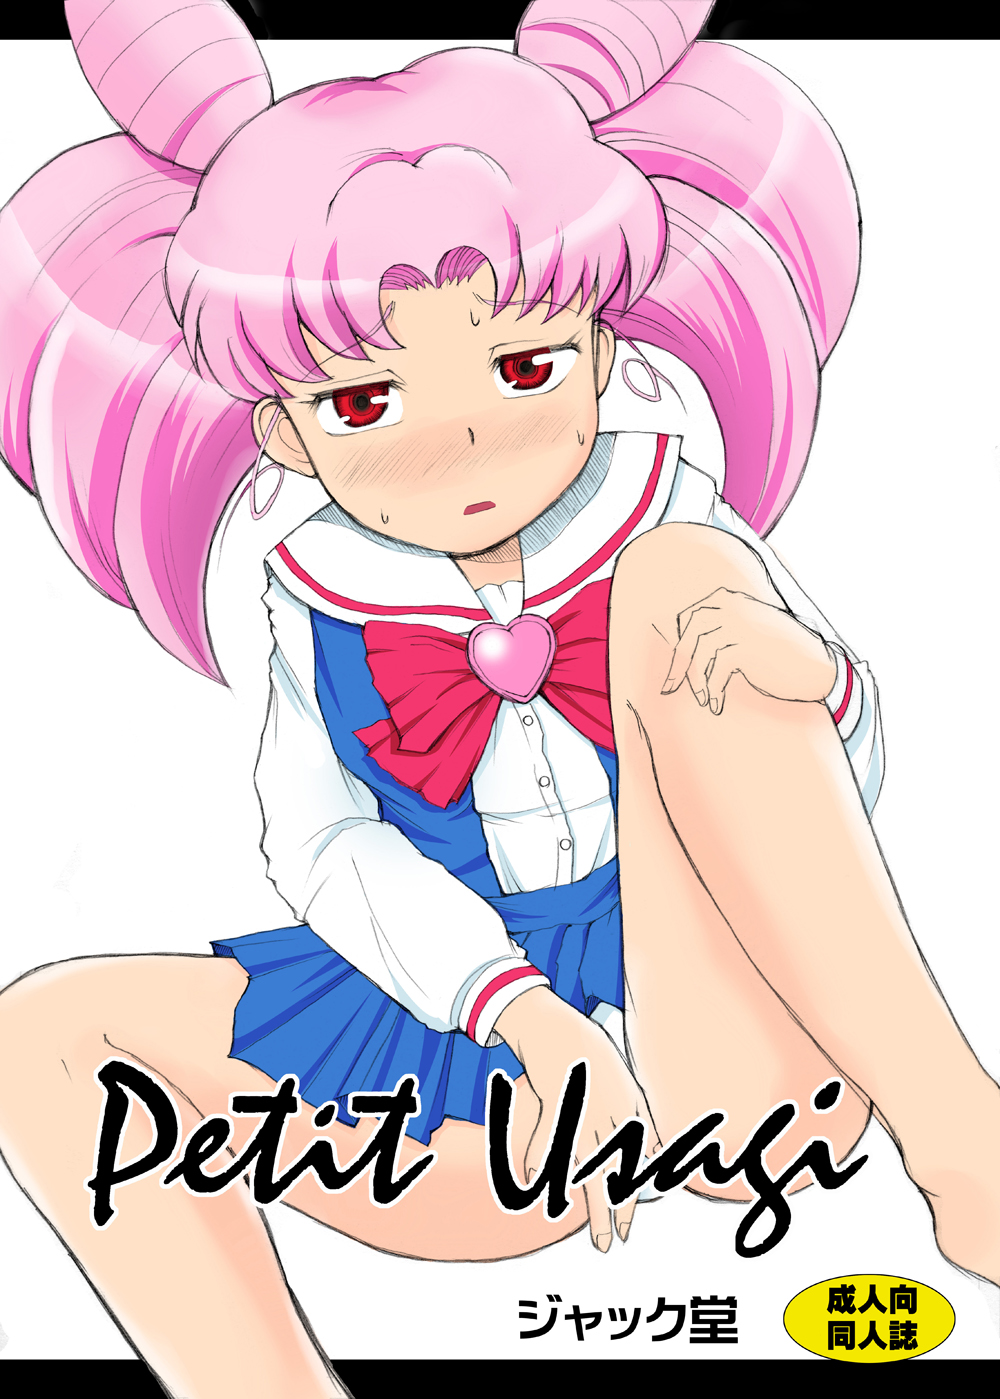 [Jack Dou] Petit Usagi (Sailor Moon) page 1 full